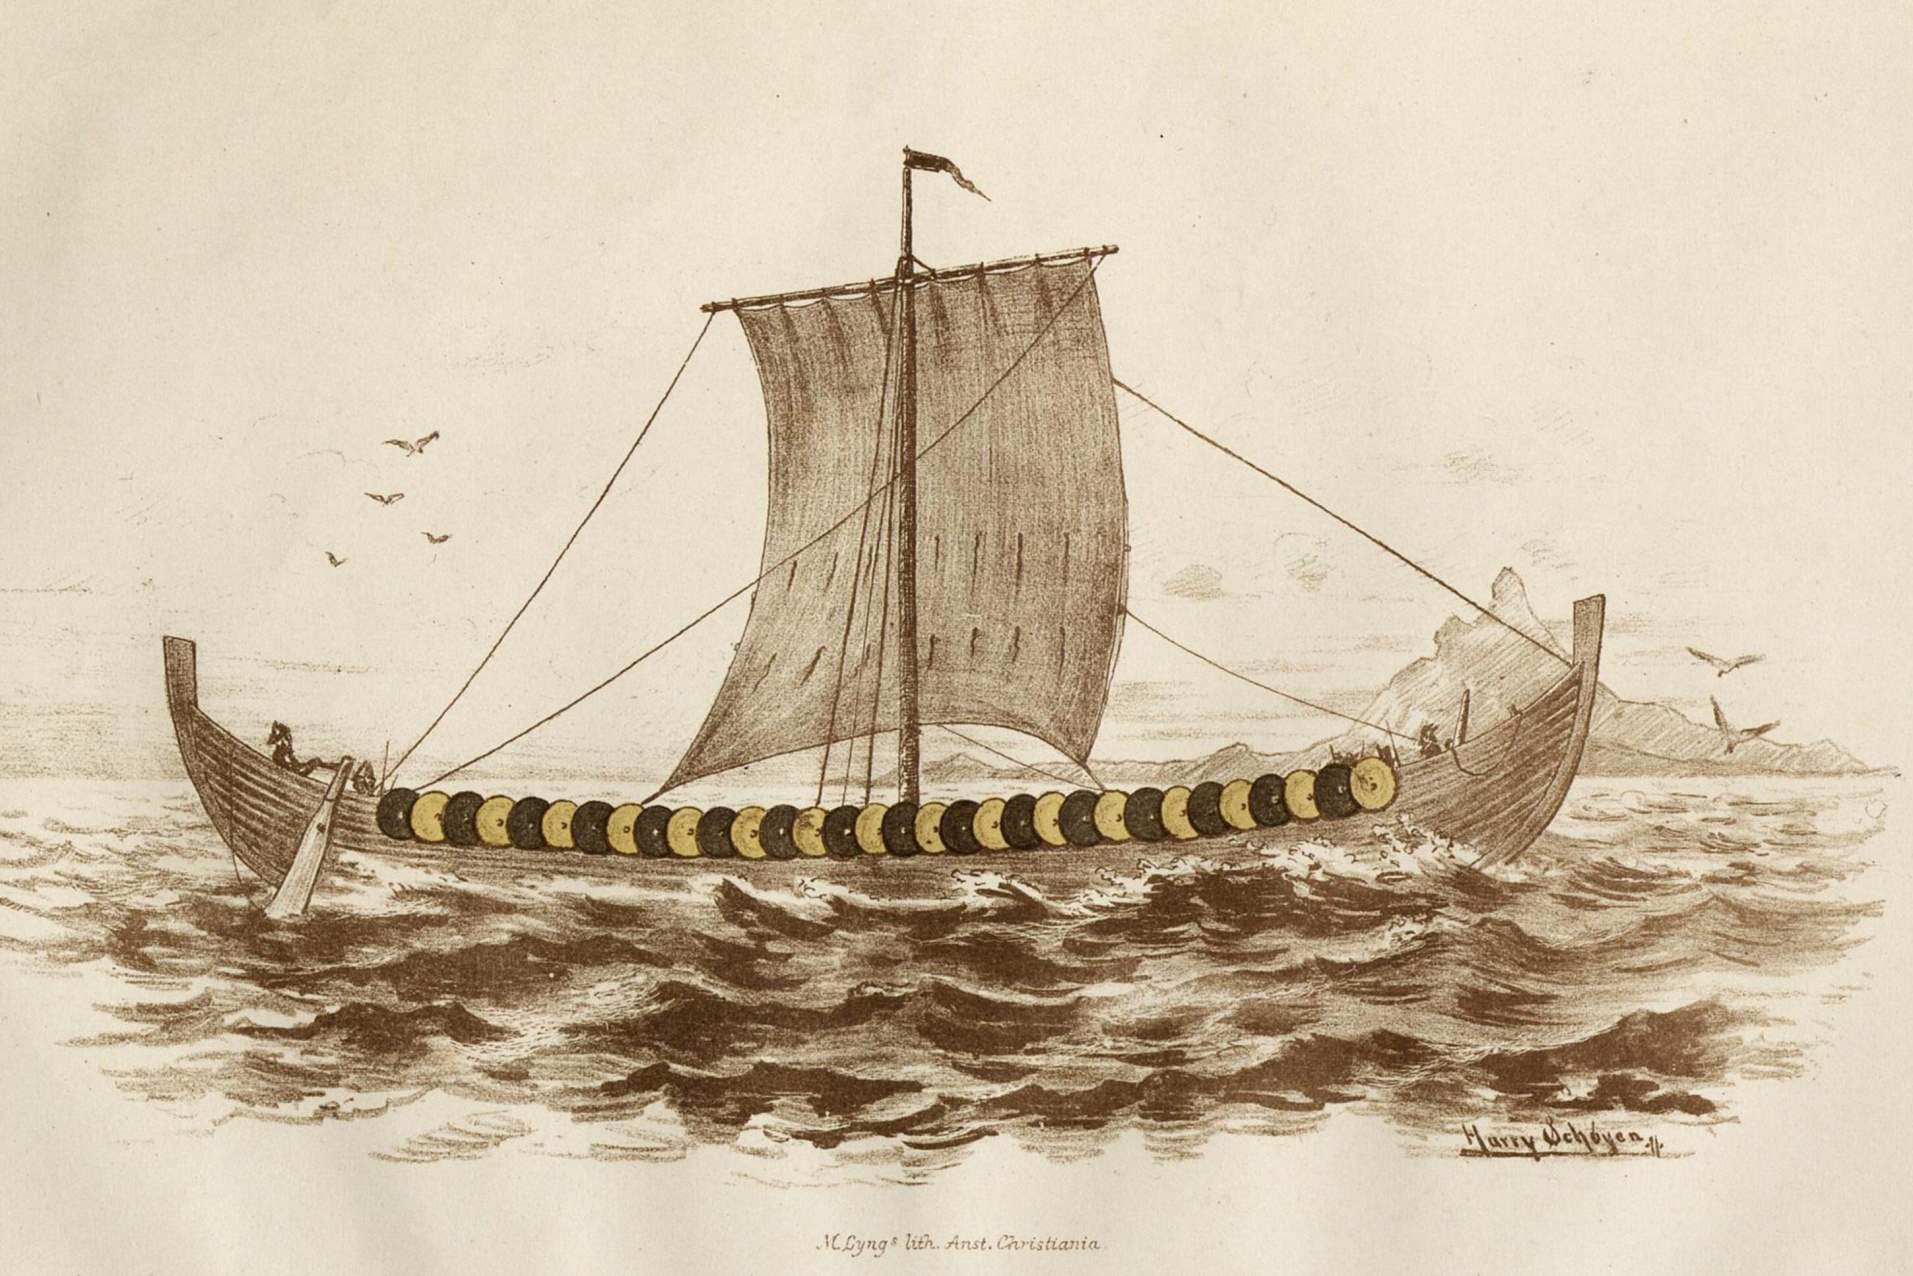 Реконструкция длинного корабля Гокстад из публикации Николайсена 1882 года. Рисунок Гарри Шойена.